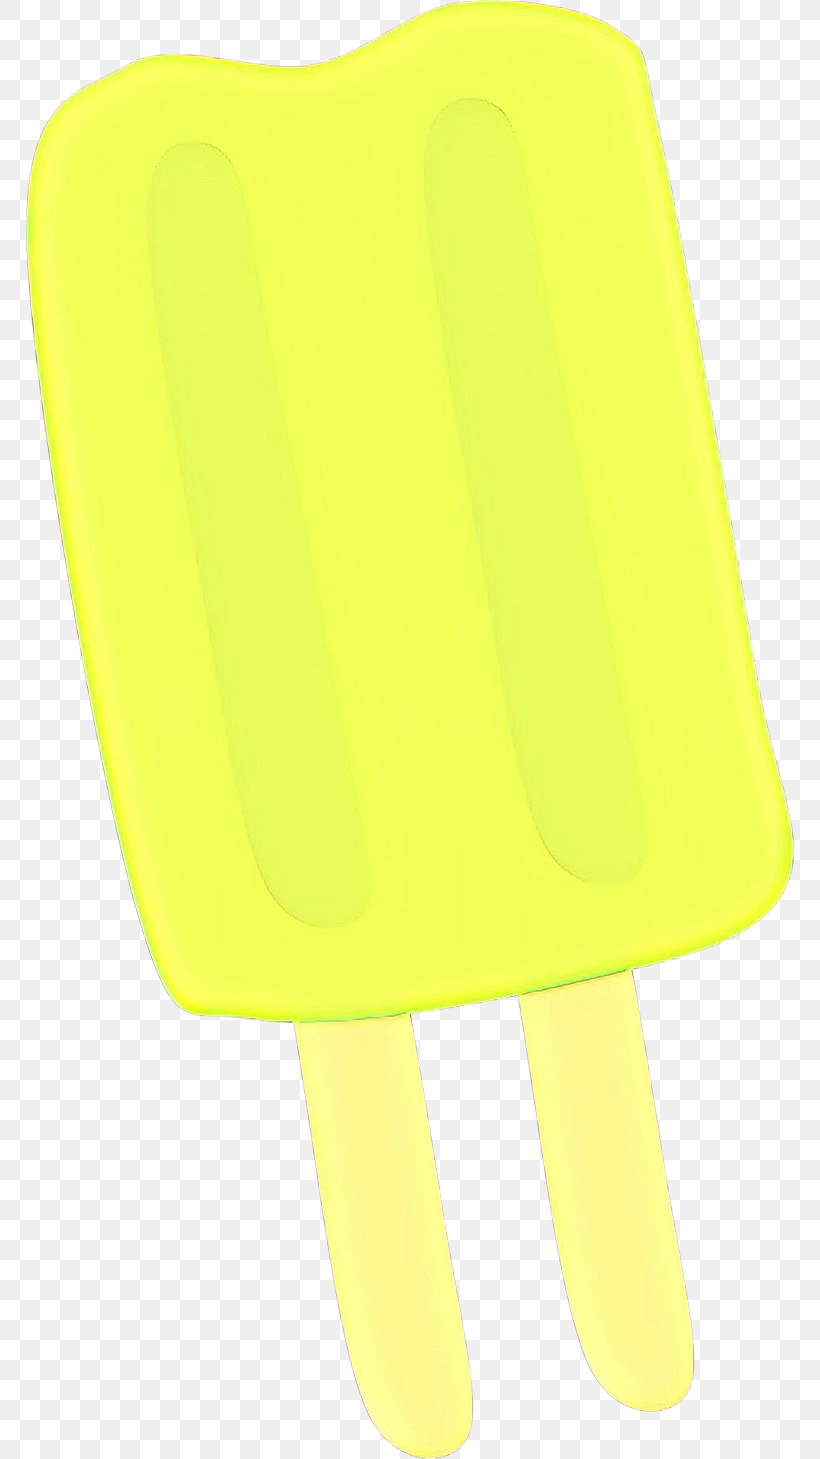 Yellow Ice Cream Bar Ice Pop Frozen Dessert, PNG, 768x1459px, Yellow, Frozen Dessert, Ice Cream Bar, Ice Pop Download Free